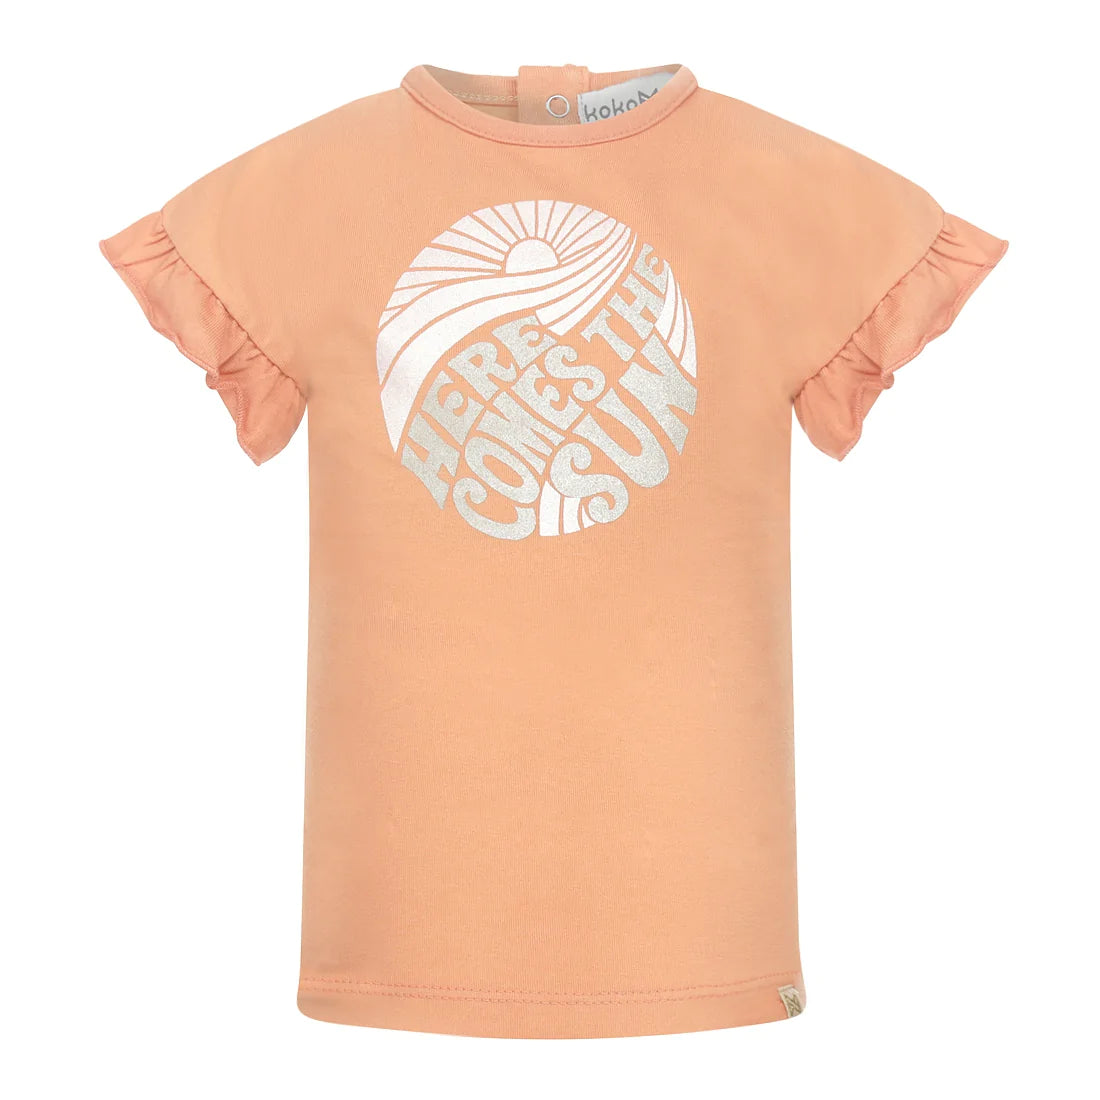 Meisjes T-shirt ss van Koko Noko in de kleur Faded orange in maat 128.